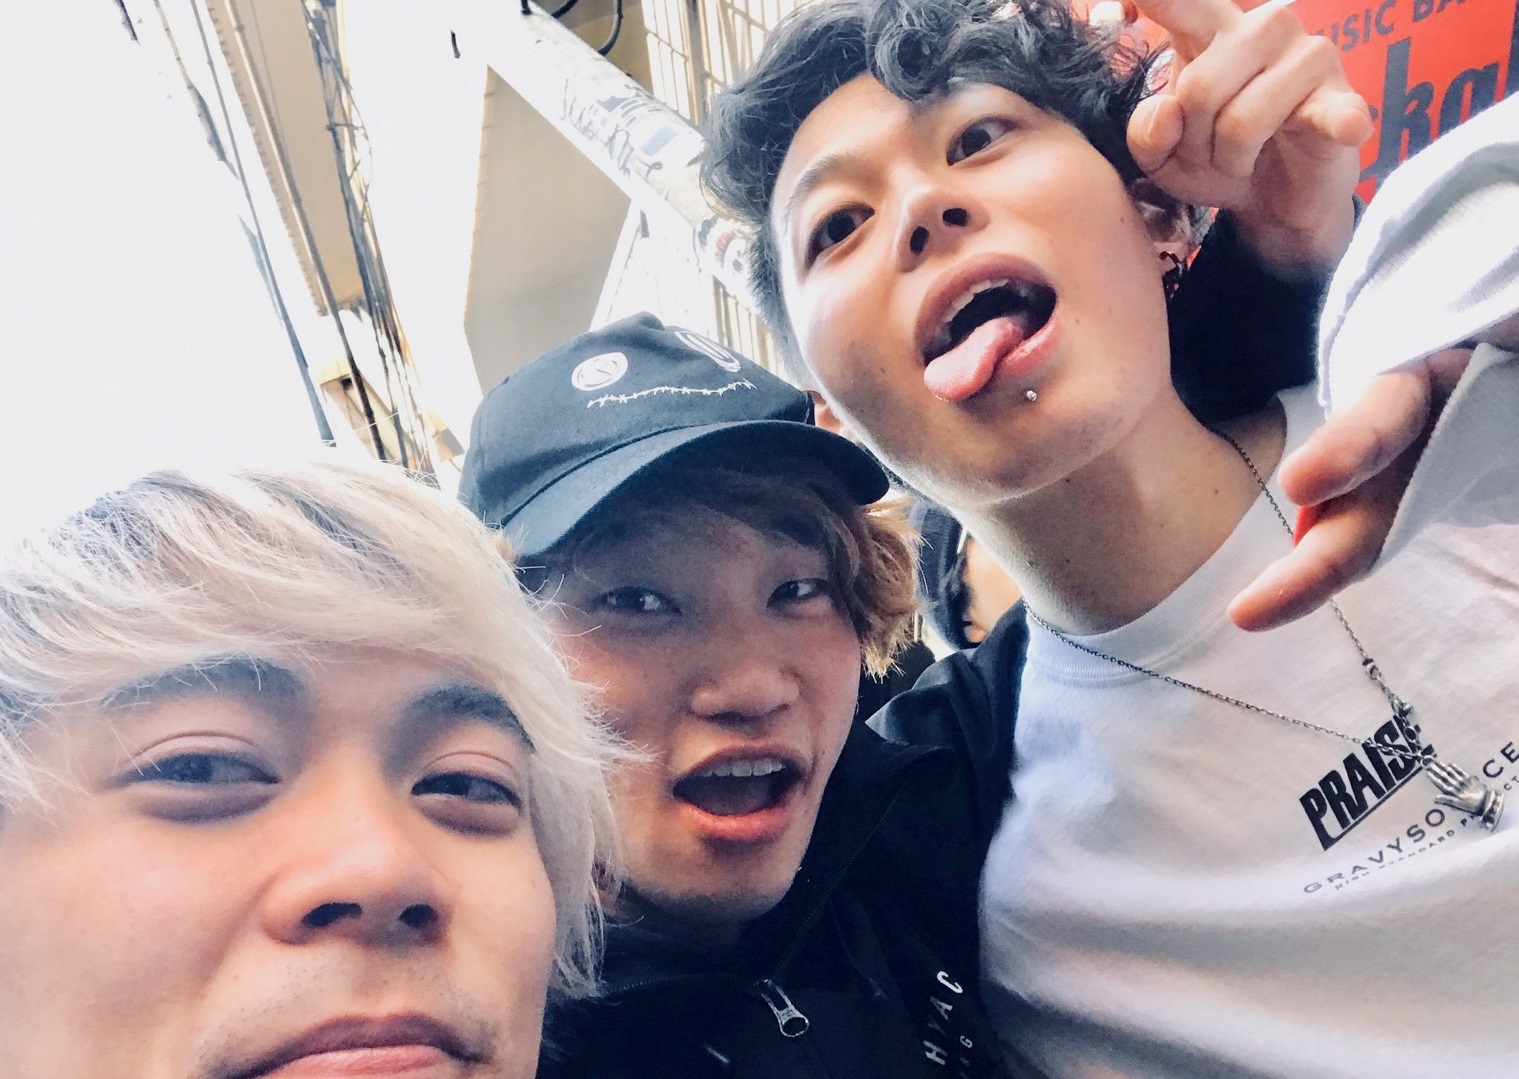 https://bar-rockaholic.jp/shibuya/blog/S__10305541.jpg